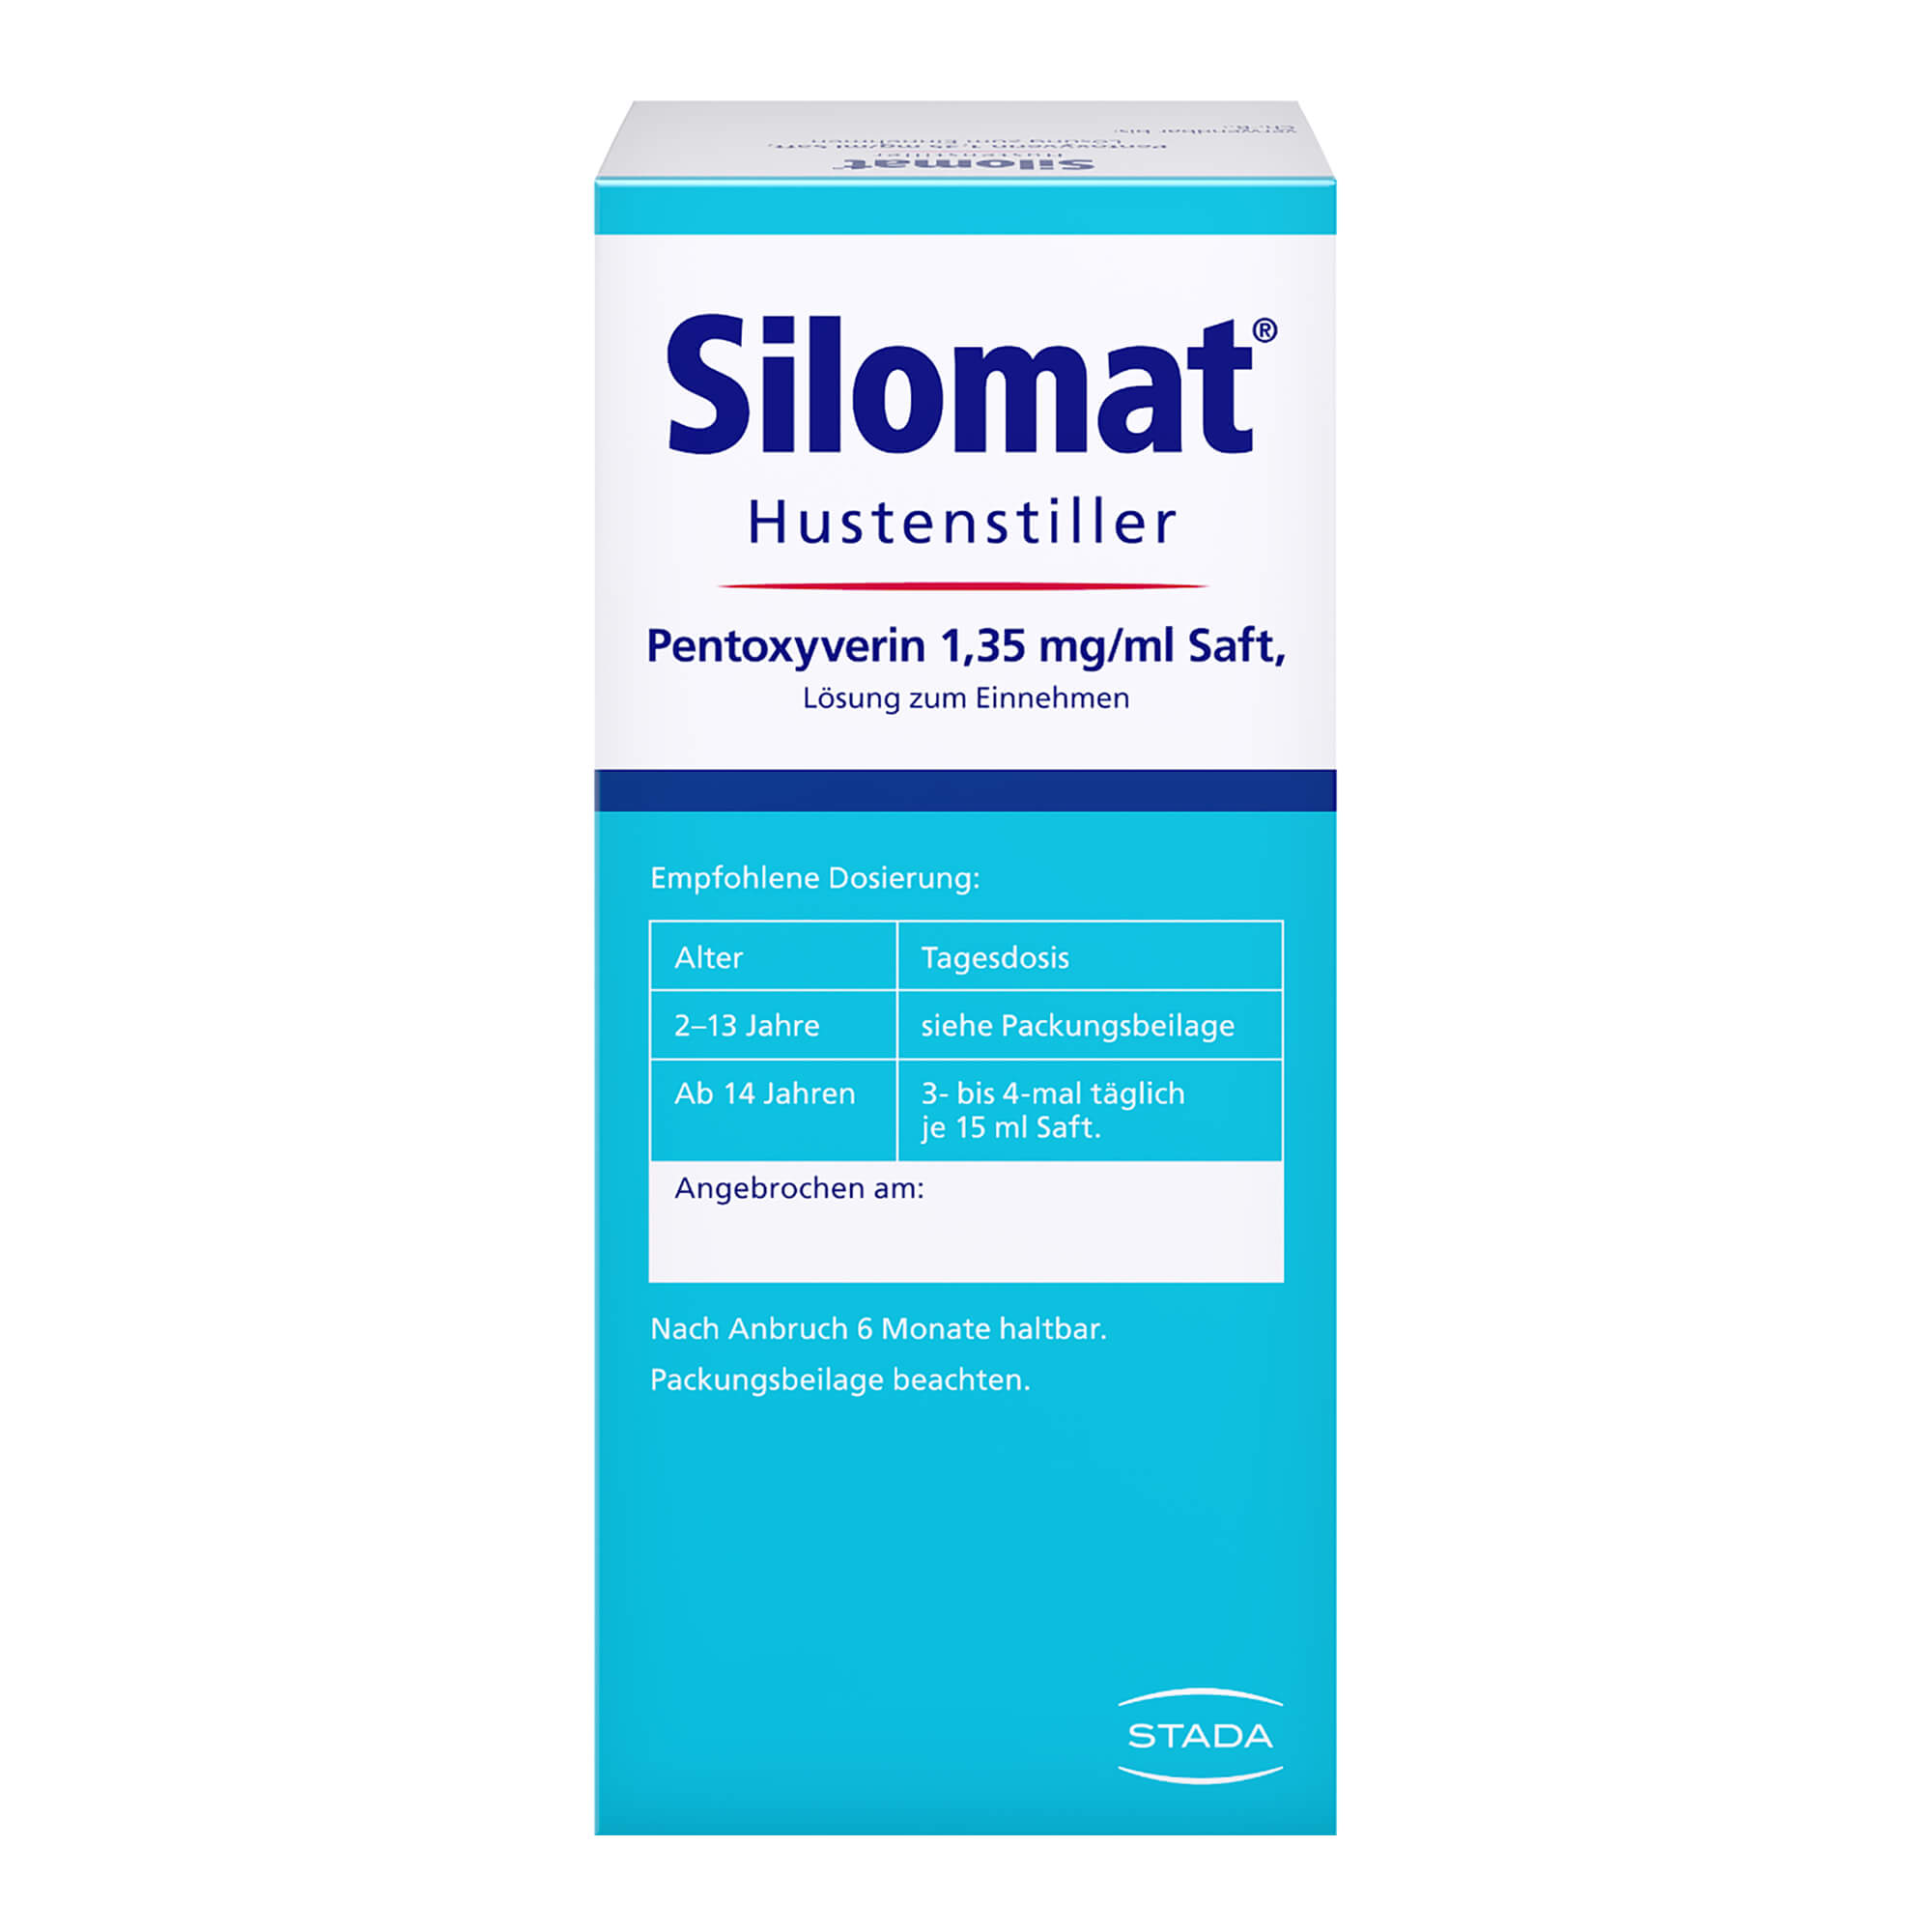 Silomat Hustenstiller Pentoxyverin 1,35 mg/ml Saft Packungsrückseite